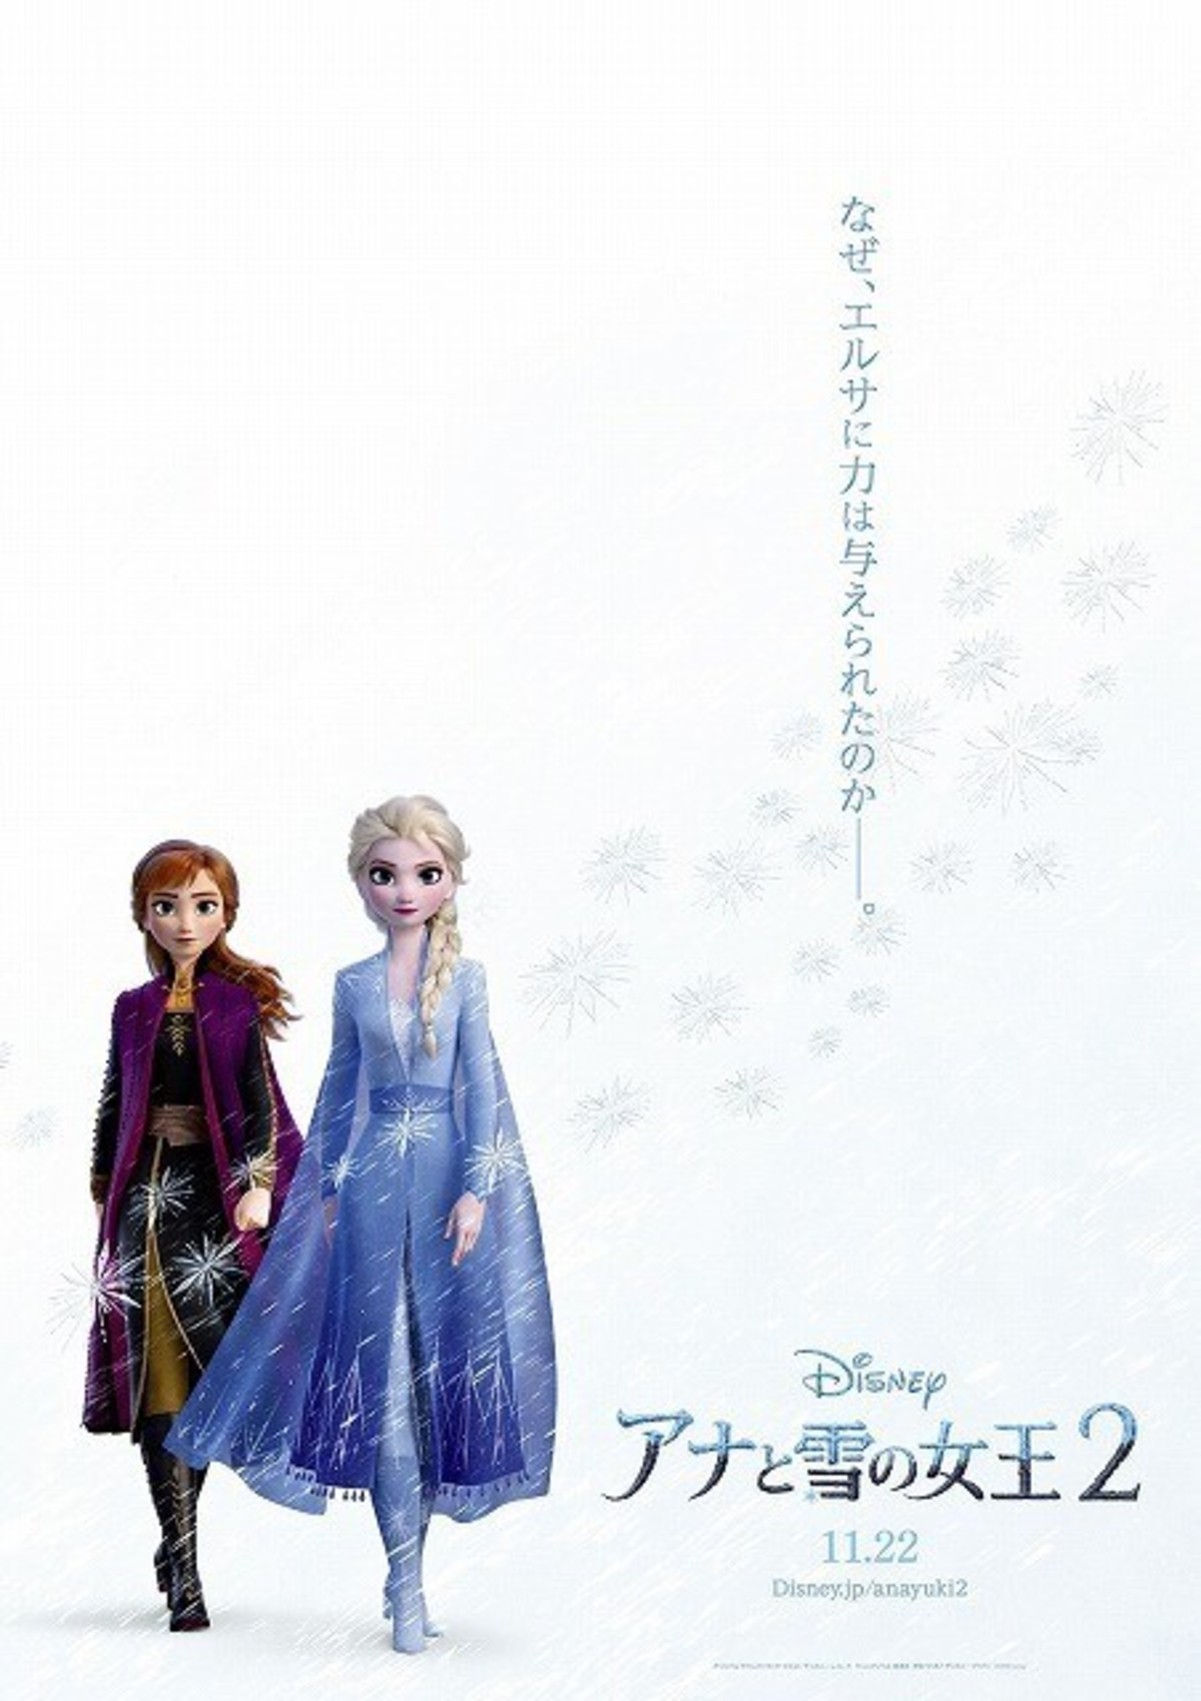 エルサの魔法の力をめぐる壮大な物語が幕を開ける アナと雪の女王2 特報公開 映画ニュース 映画 Com